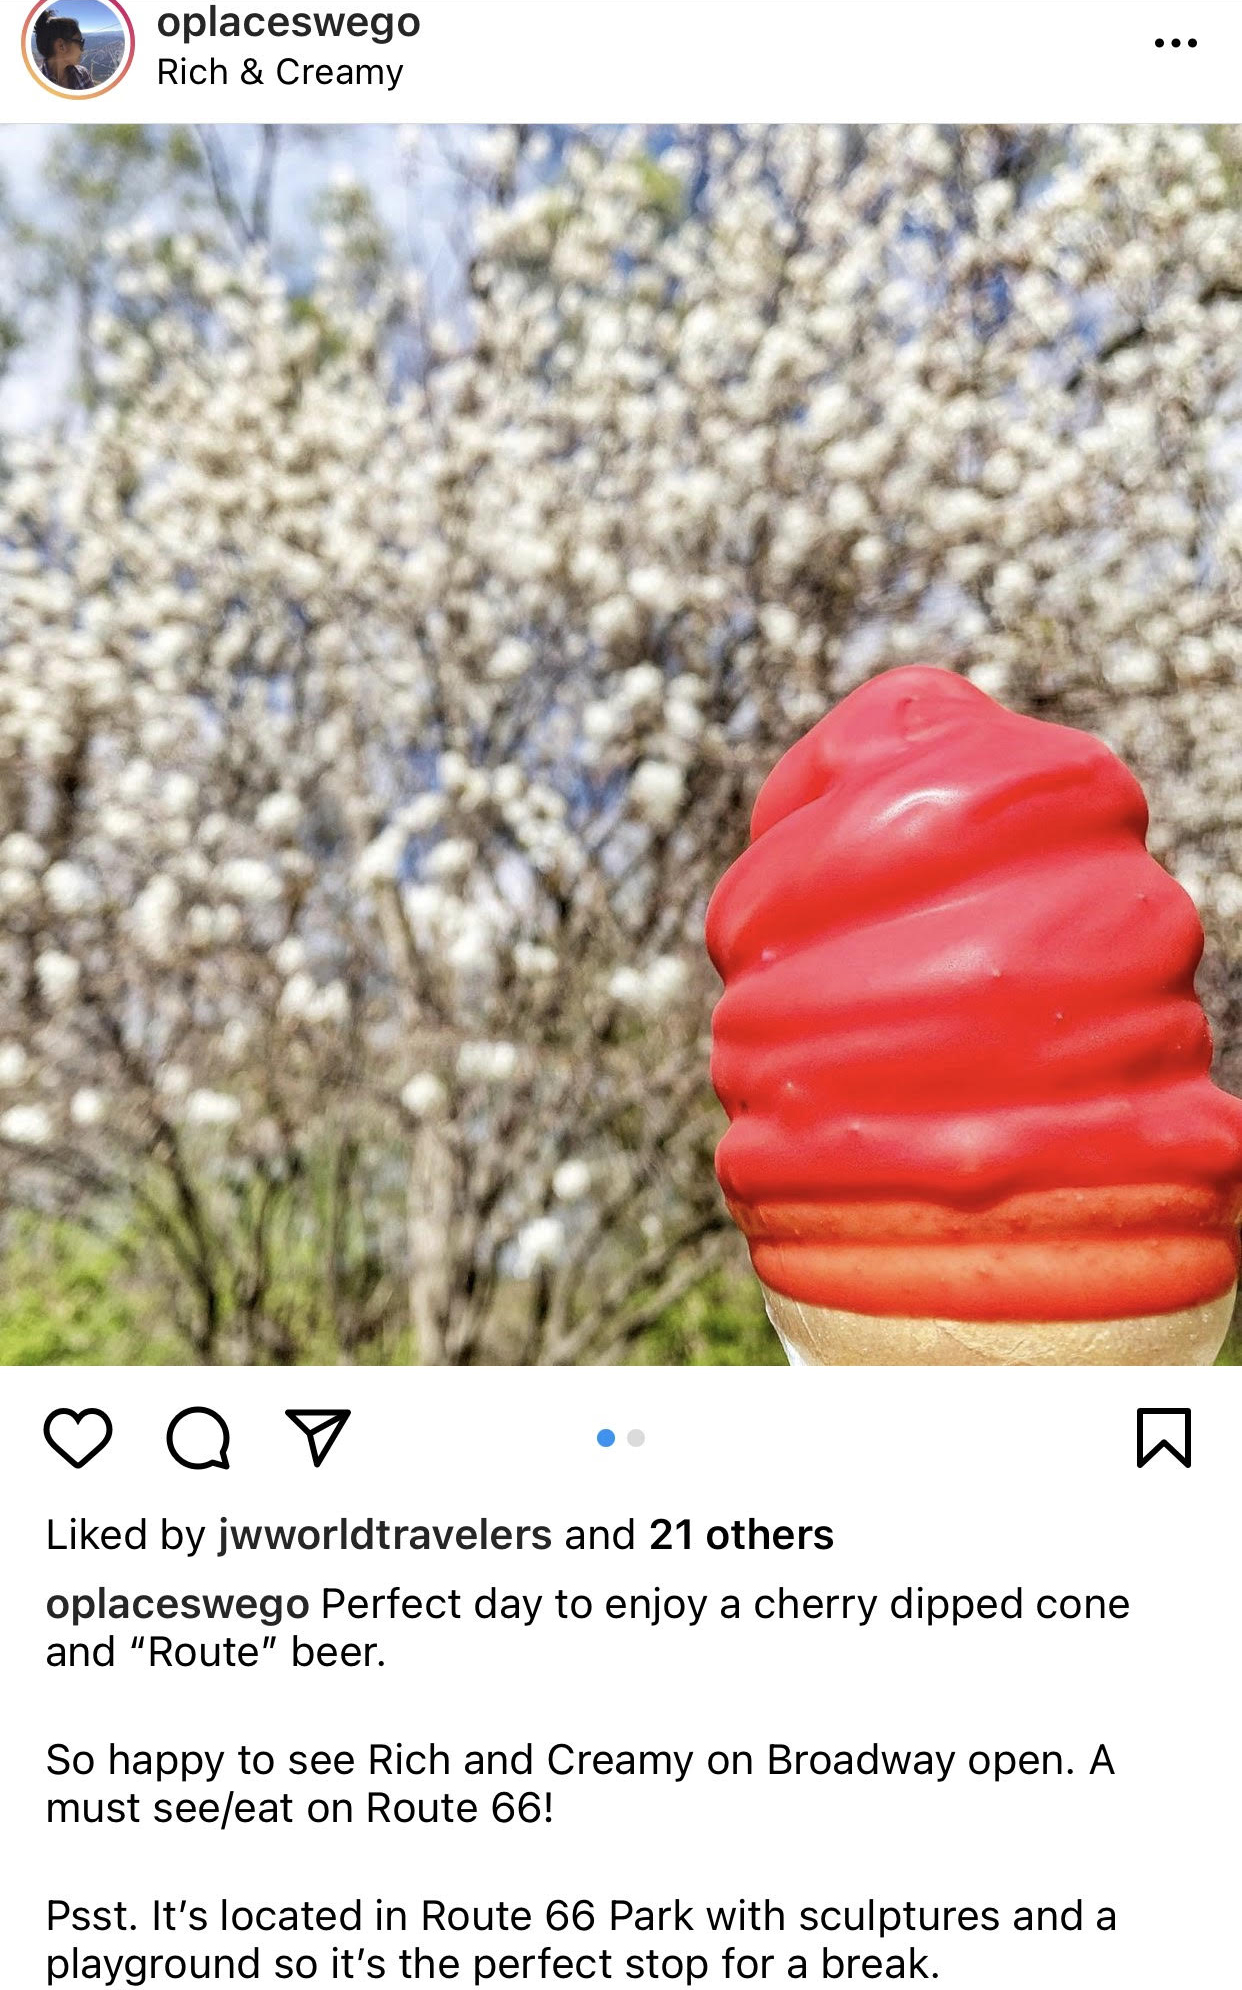 rich and creamy ice cream cone